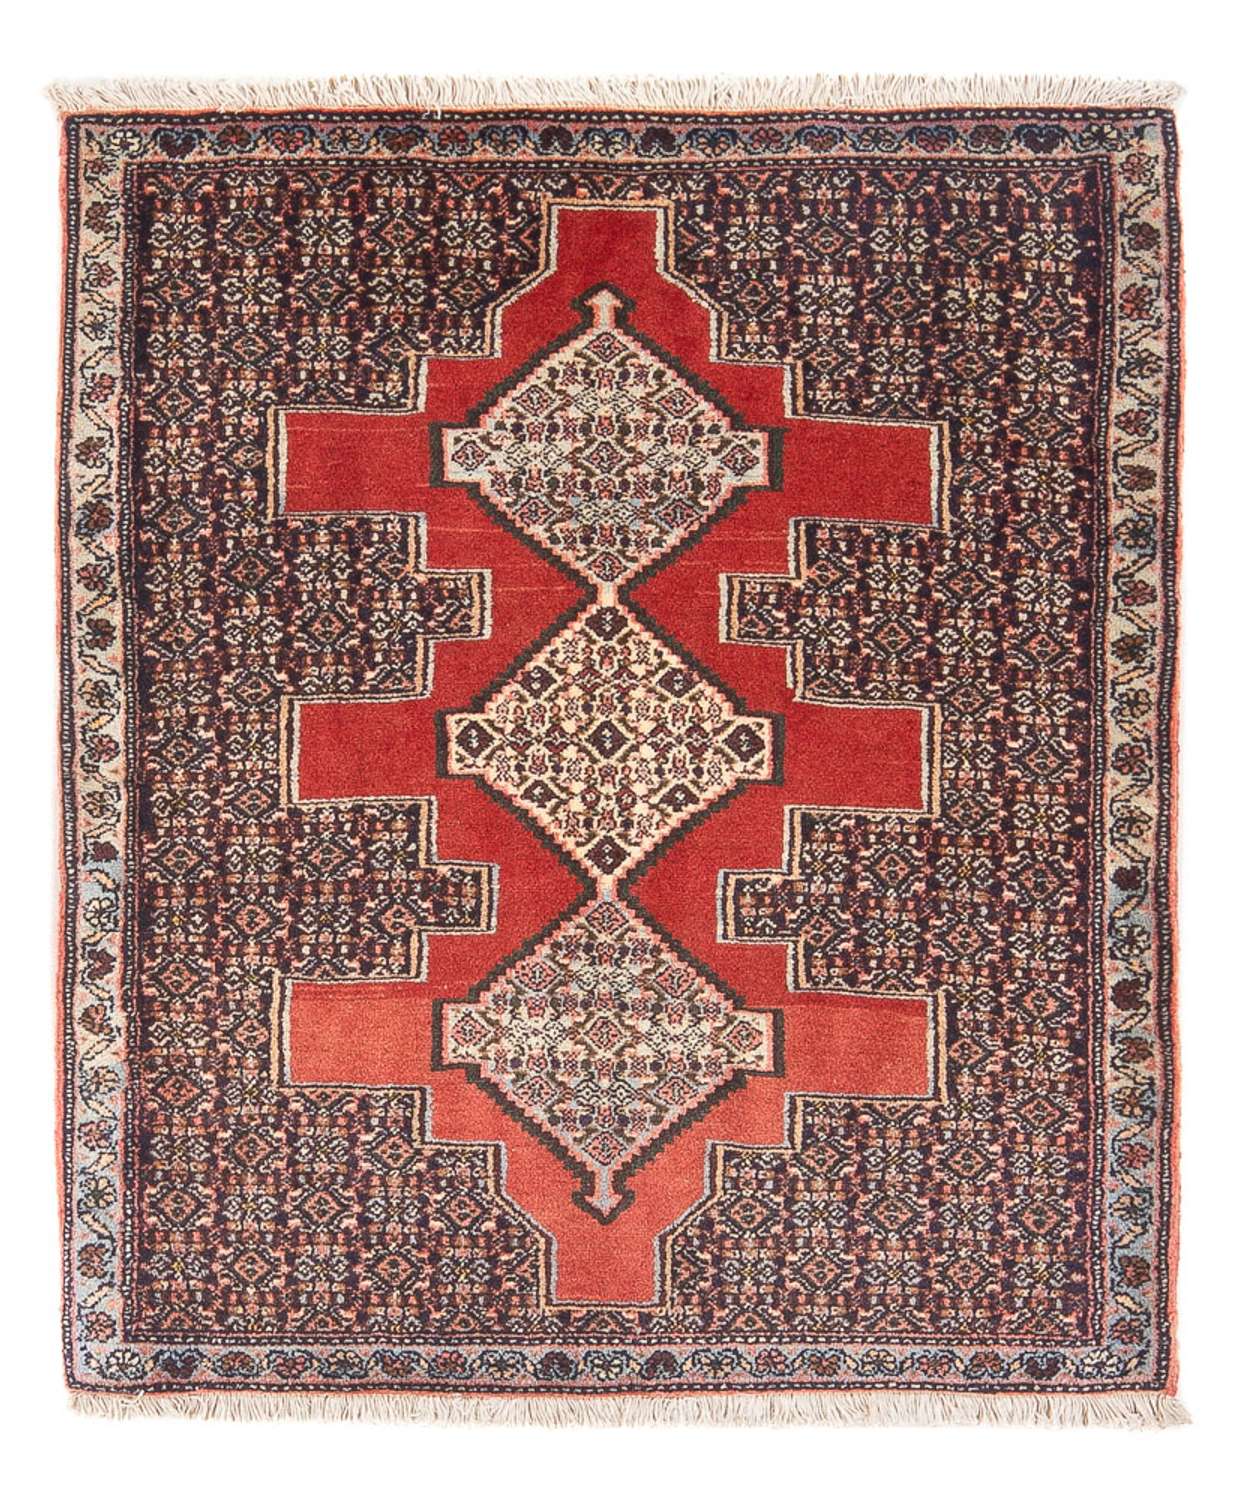 Dywan perski - Klasyczny - 103 x 78 cm - czerwony